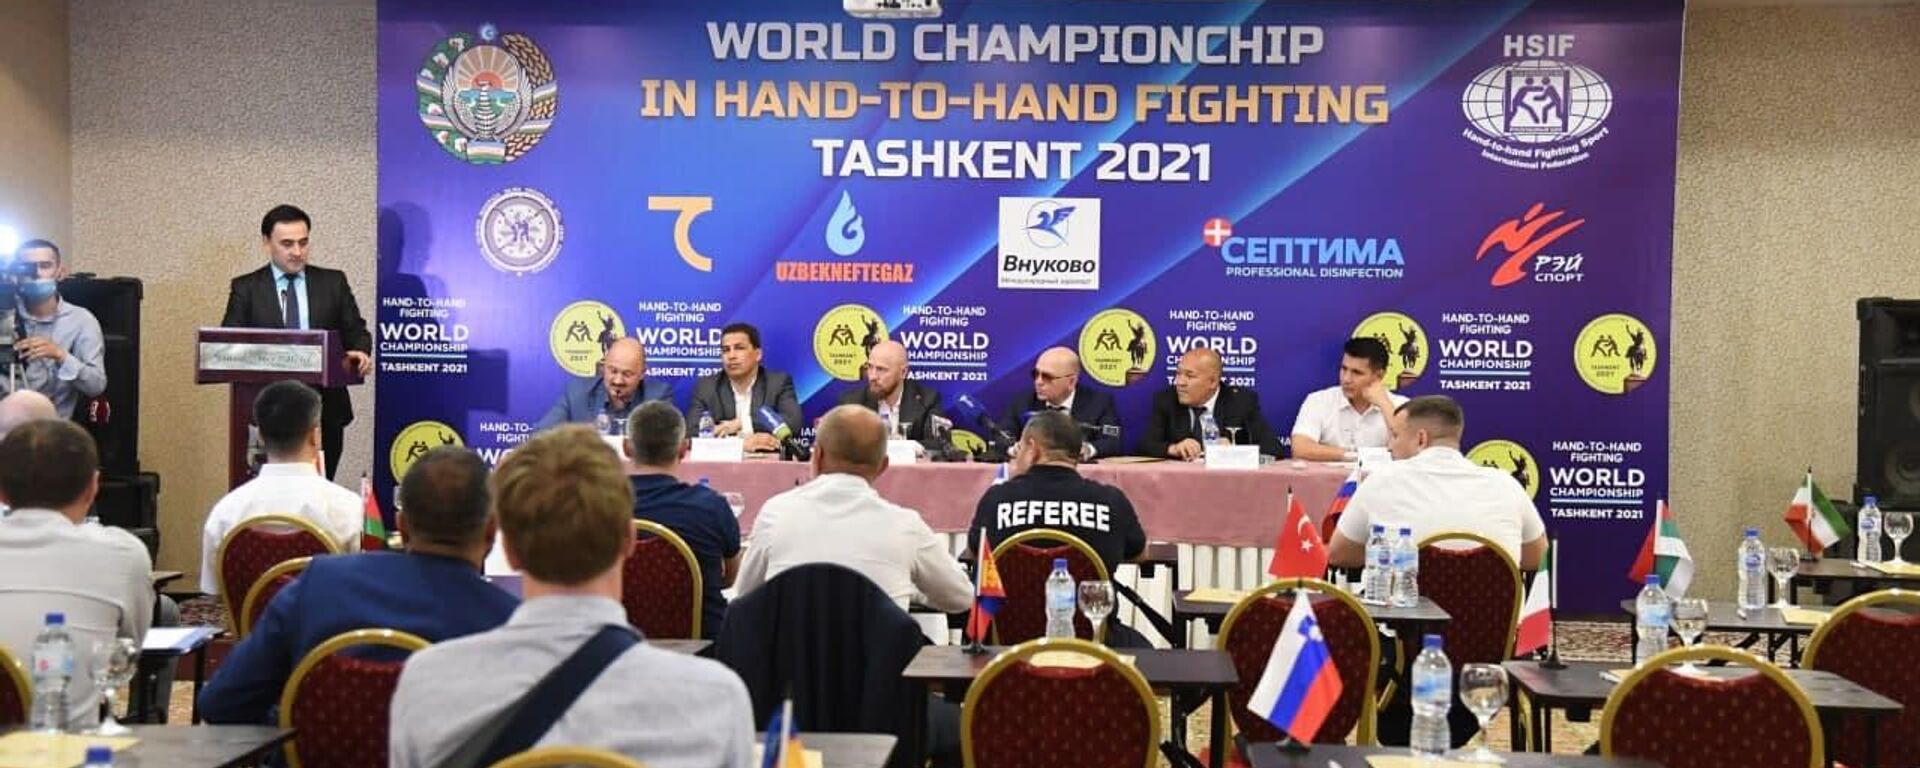 Чемпионат мира по рукопашному бою впервые пройдет в Ташкенте - Sputnik Ўзбекистон, 1920, 05.06.2021